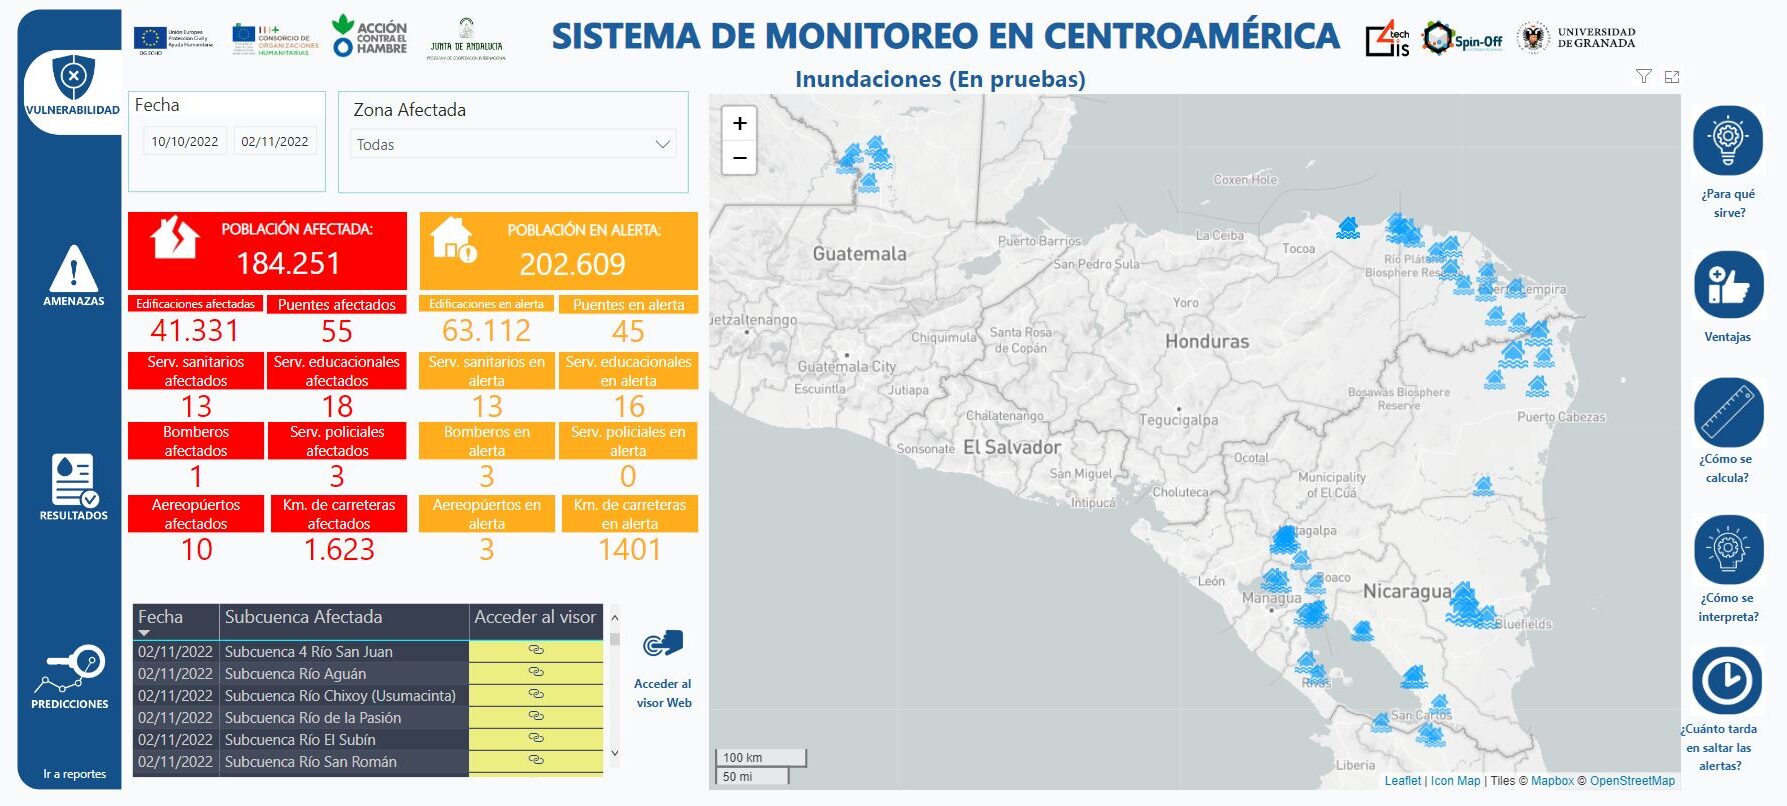 Captura de pantalla de la plataforma Power BI en la que aparece la aplicación INUNDia para detectar y monitorear inundaciones